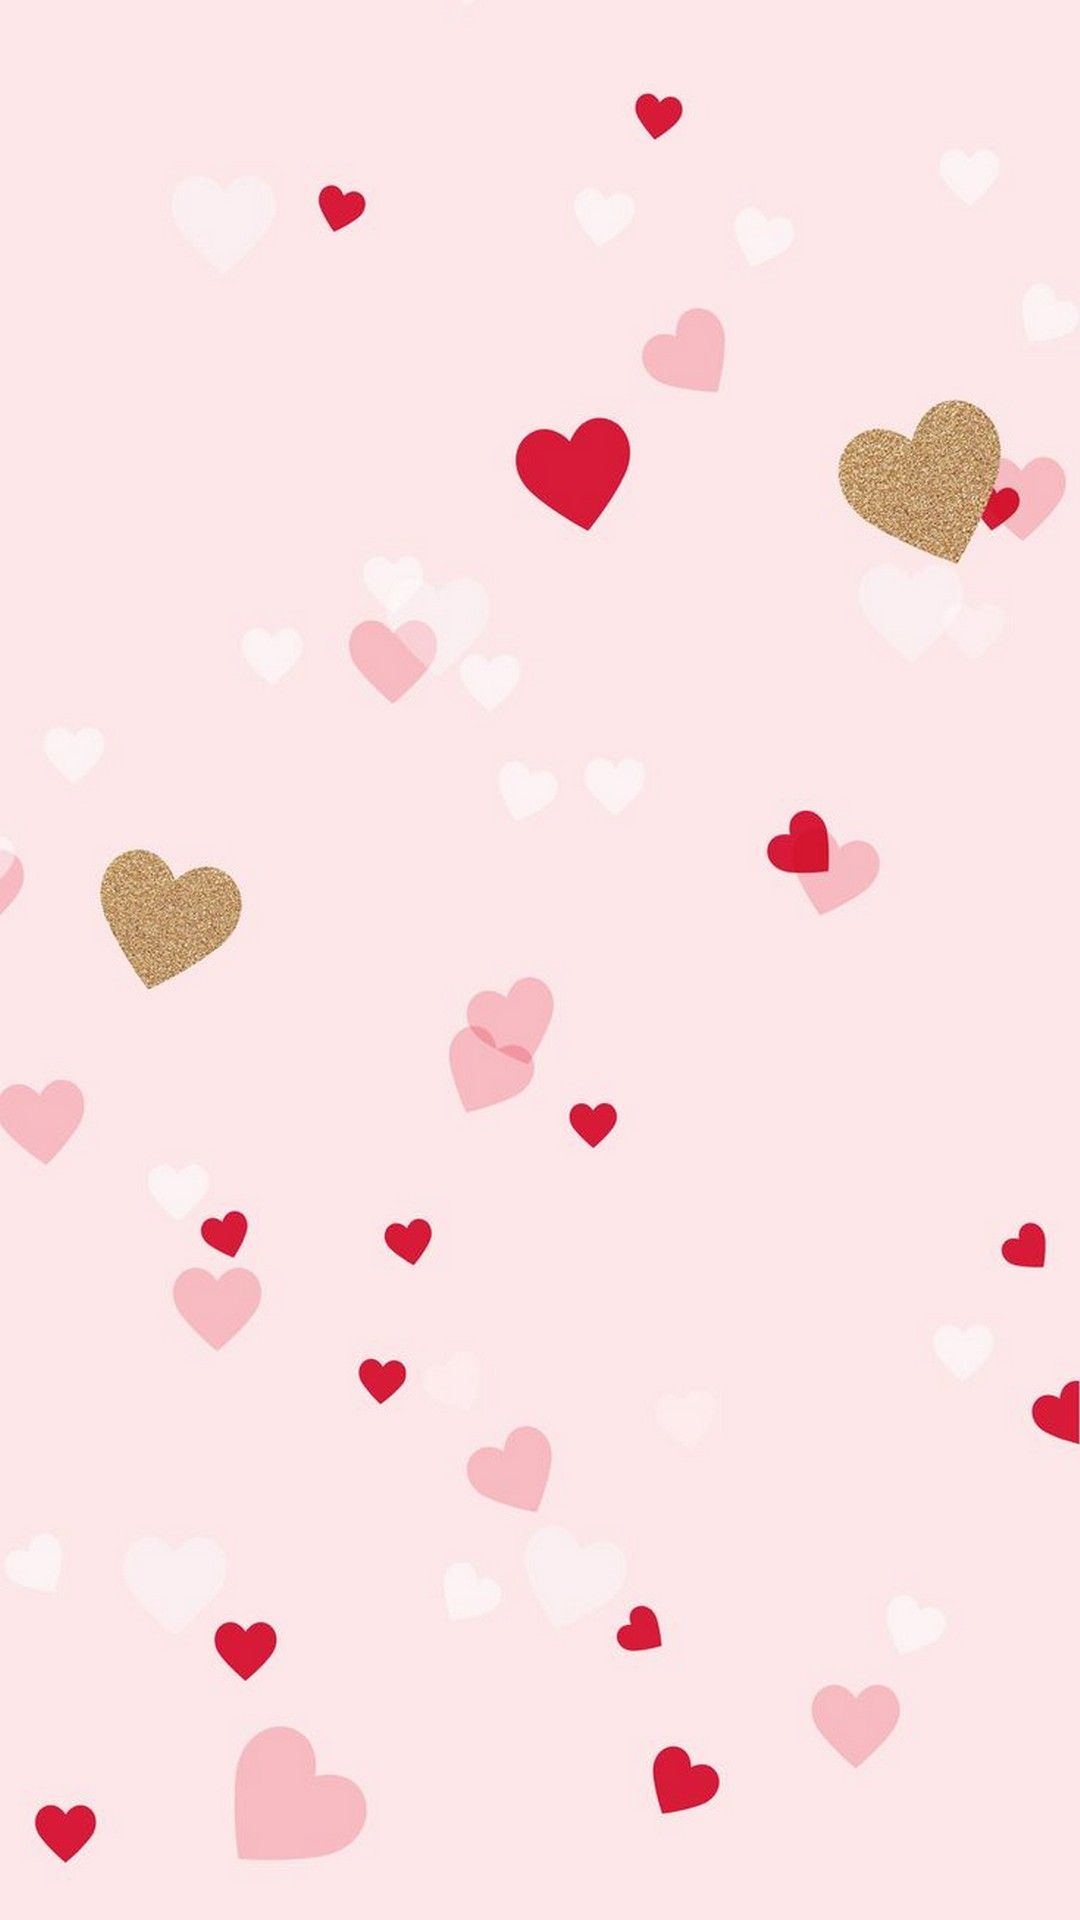 Tìm kiếm những hình nền iPhone Valentine miễn phí? Đừng bỏ qua những lựa chọn tuyệt vời này, giúp cho chiếc điện thoại của bạn càng thêm phần lãng mạn và yêu kiều. 